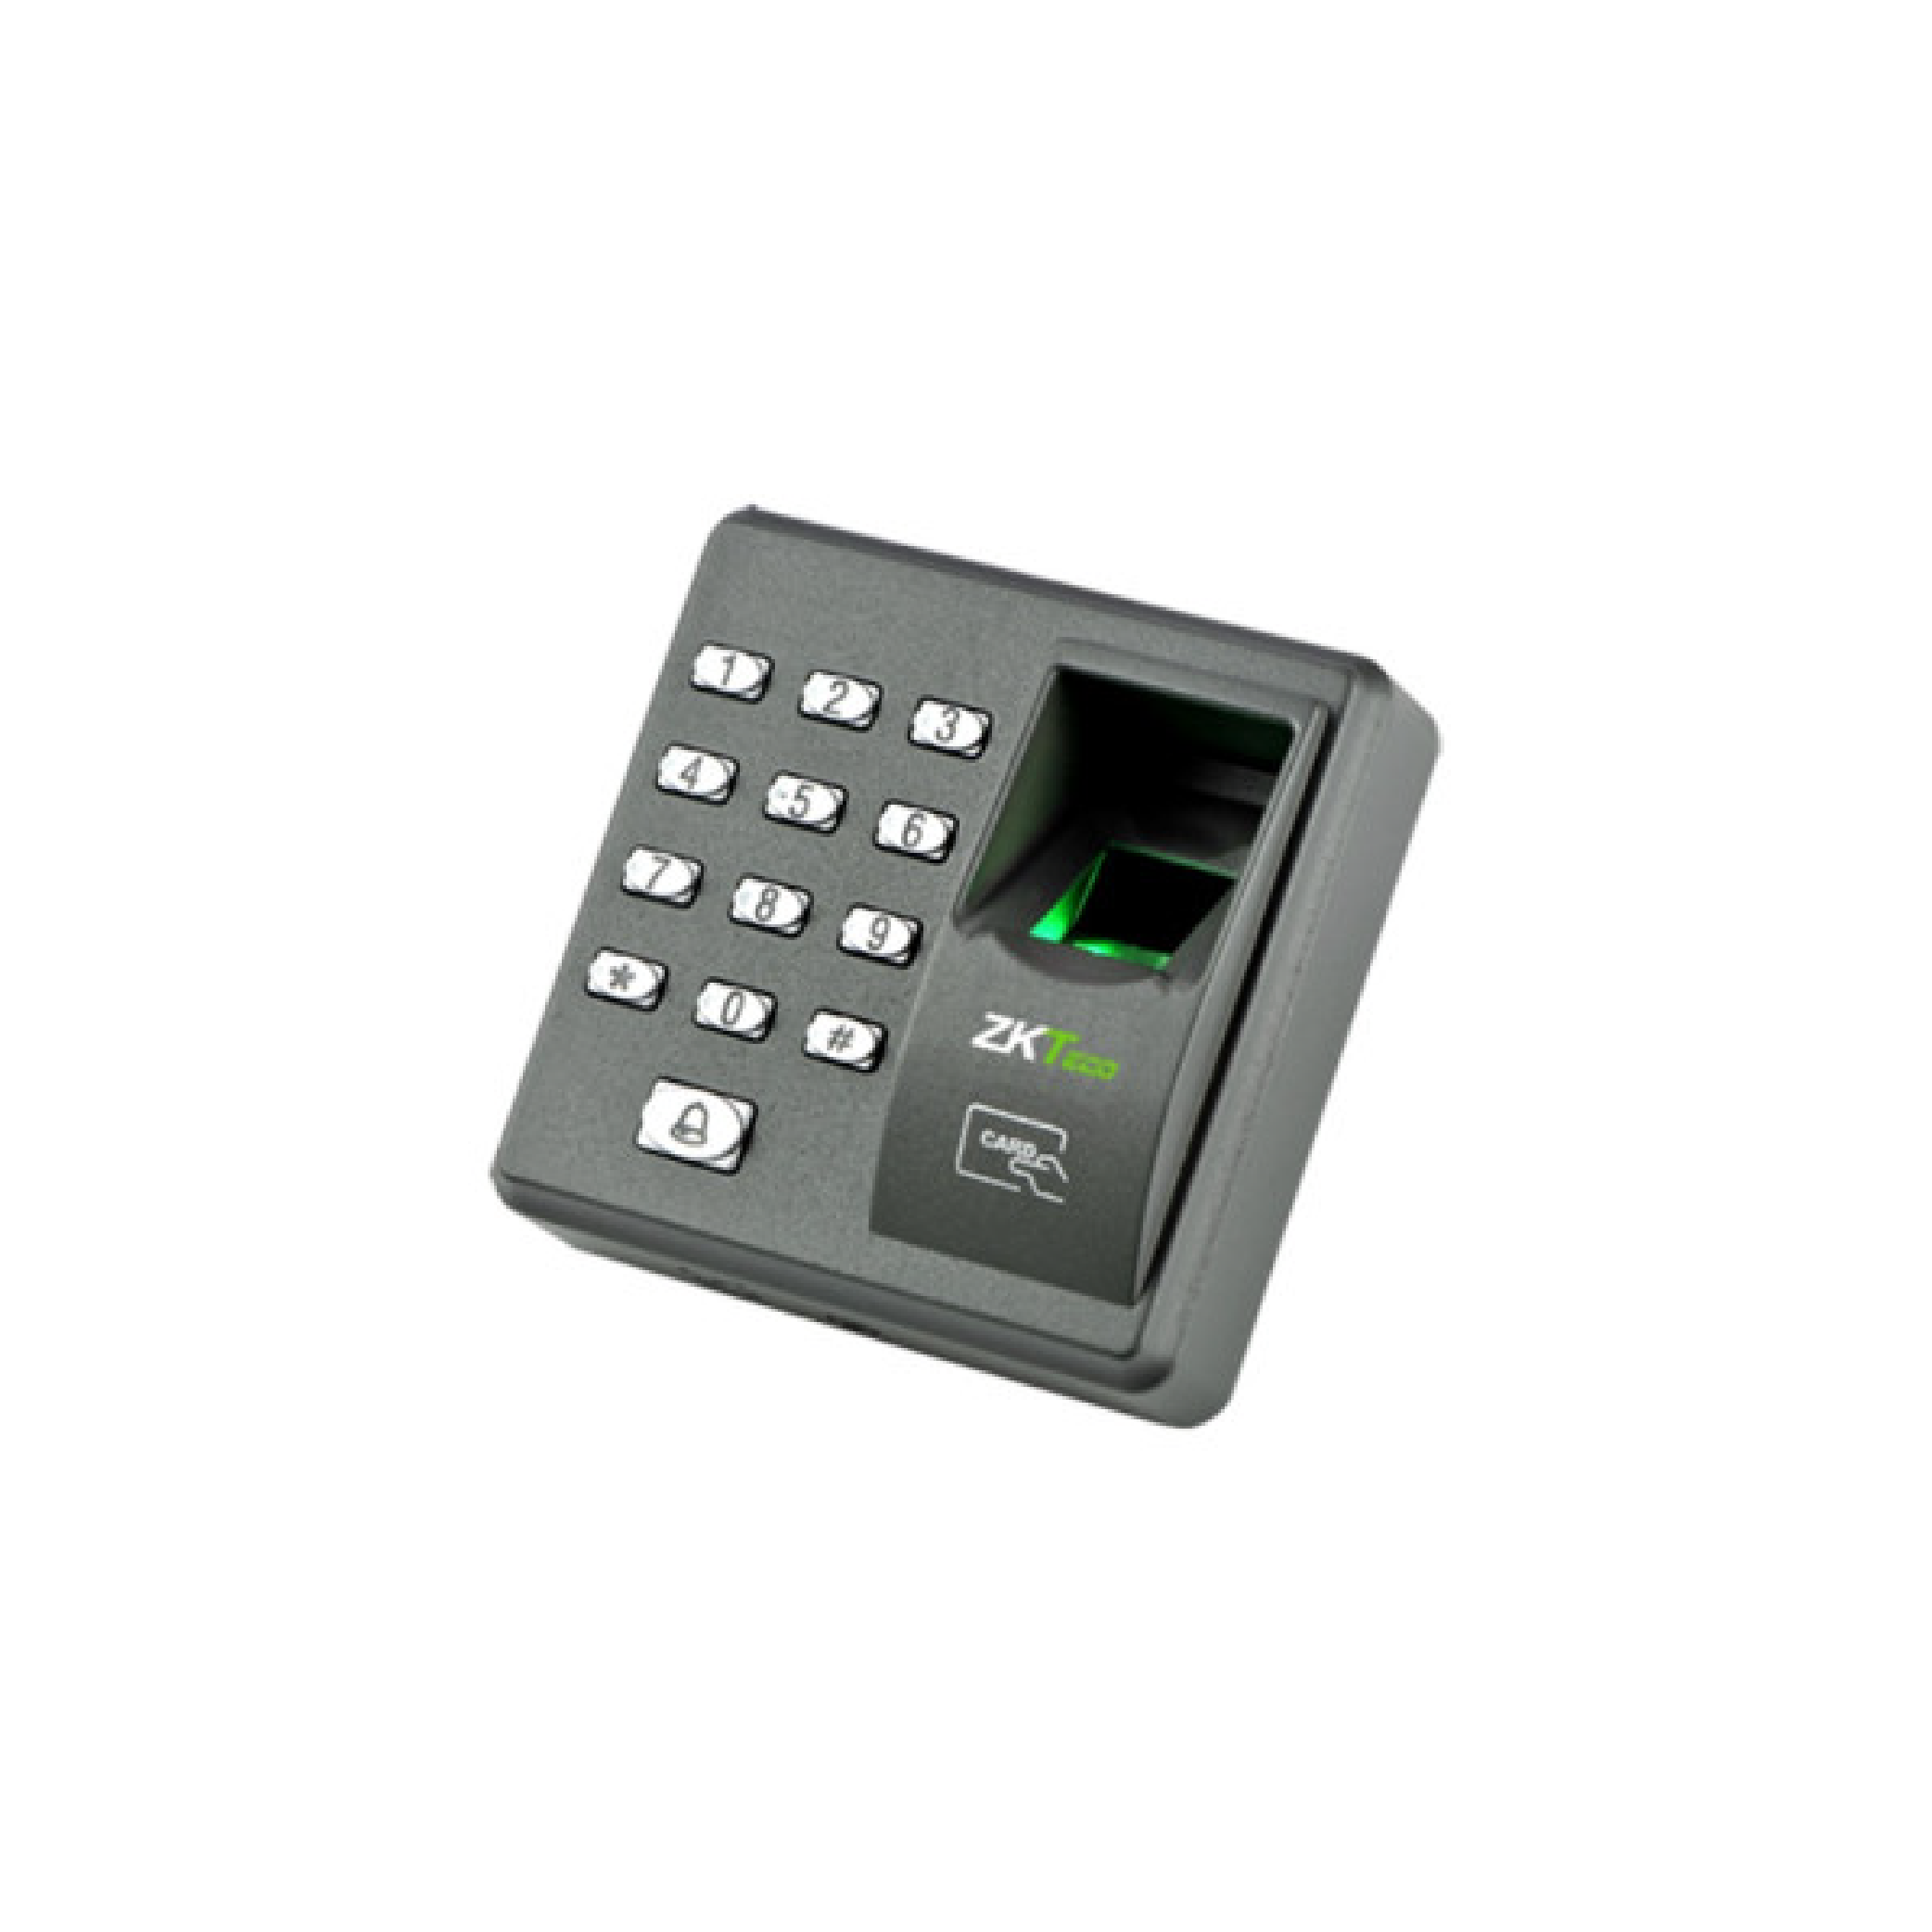 Terminal de control de acceso standalone con verificación huella/clave/tarjeta rfid id 125khz. X7.